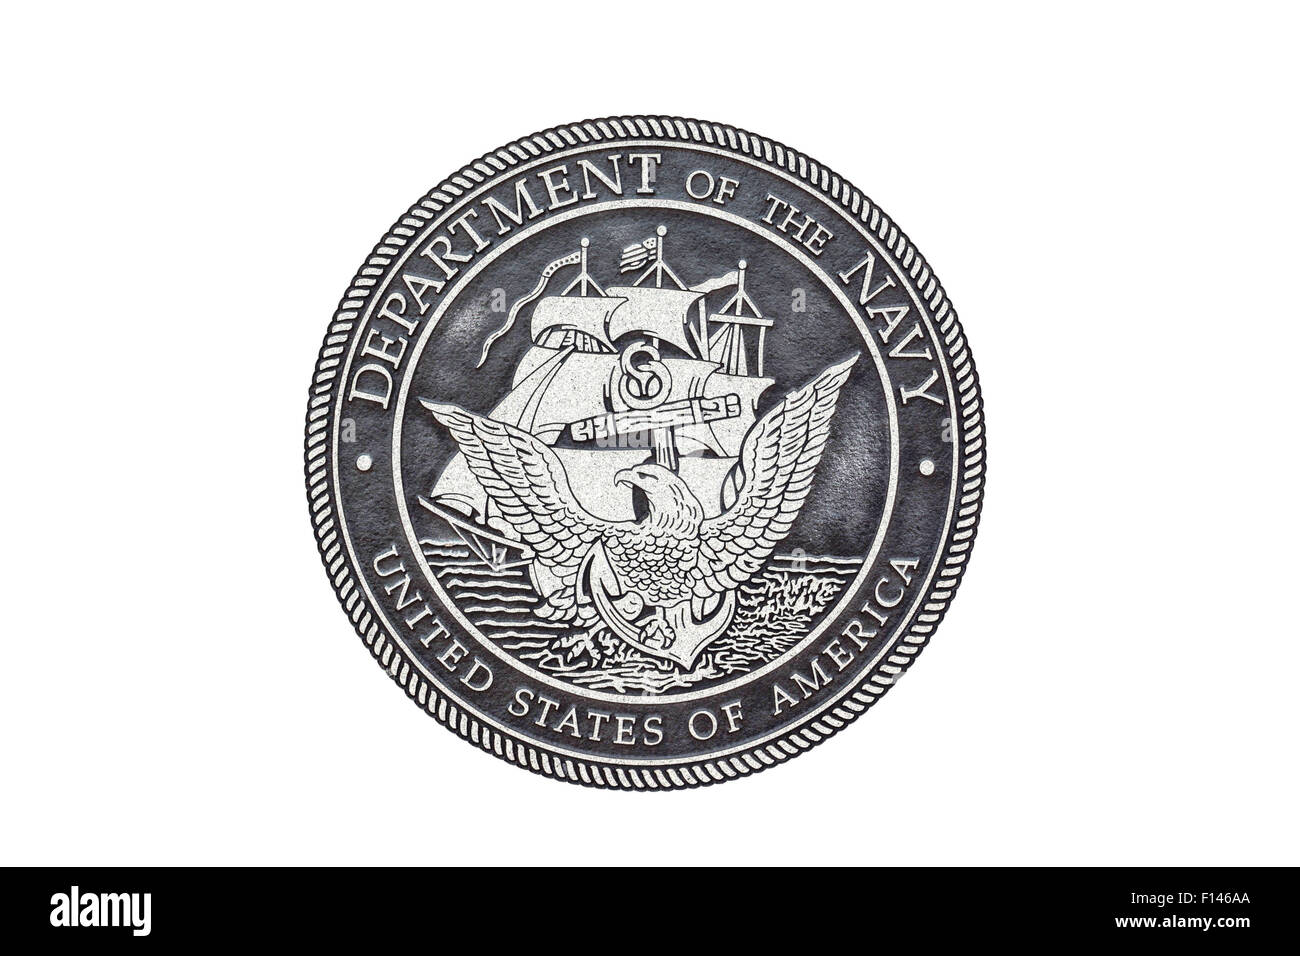 Le sceau officiel de l'US Navy sur un fond blanc. Banque D'Images